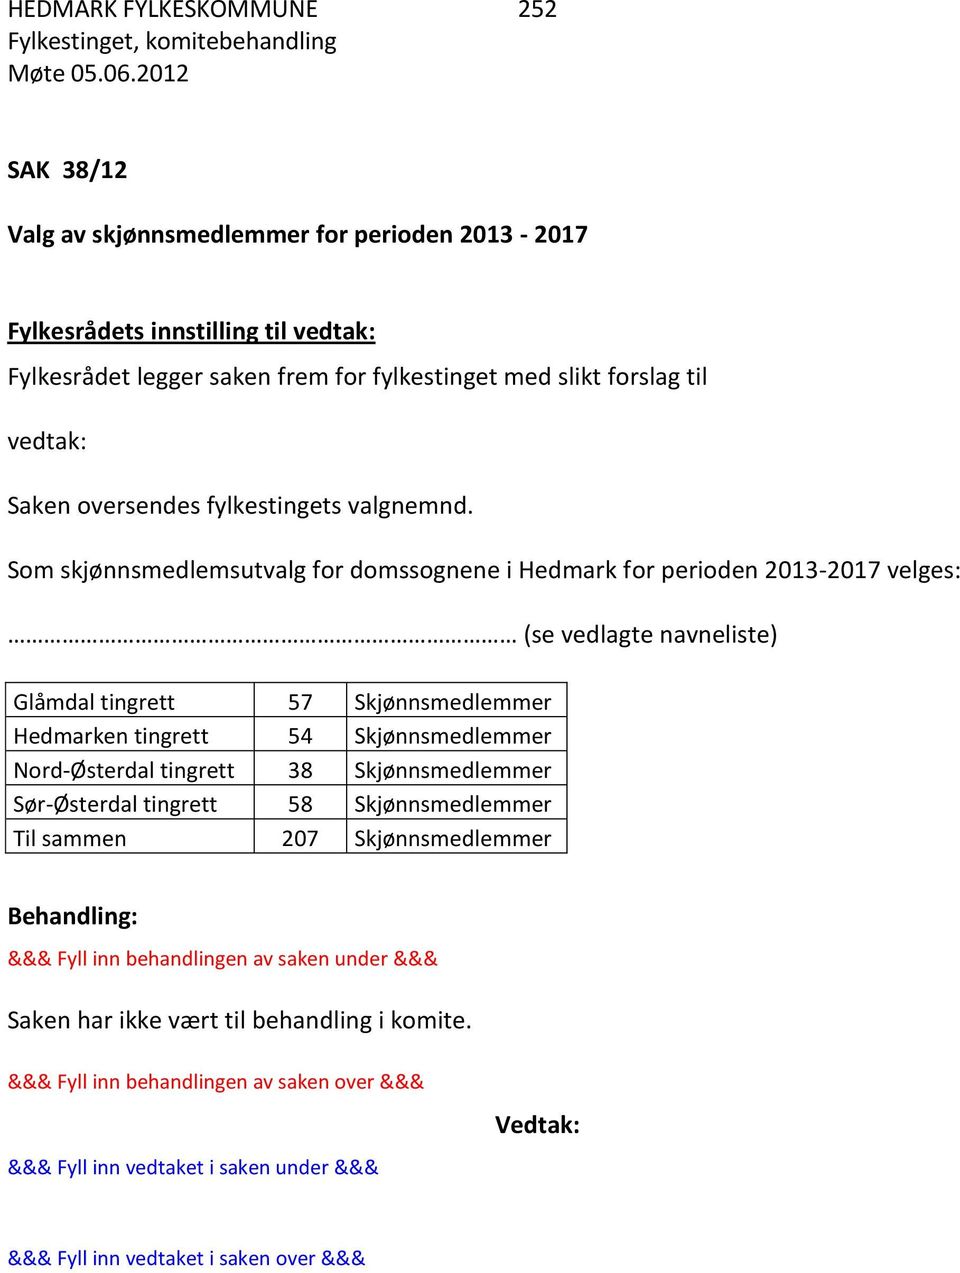 Som skjønnsmedlemsutvalg for domssognene i Hedmark for perioden 2013-2017 velges: (se vedlagte navneliste) Glåmdal tingrett 57 Skjønnsmedlemmer Hedmarken tingrett 54 Skjønnsmedlemmer